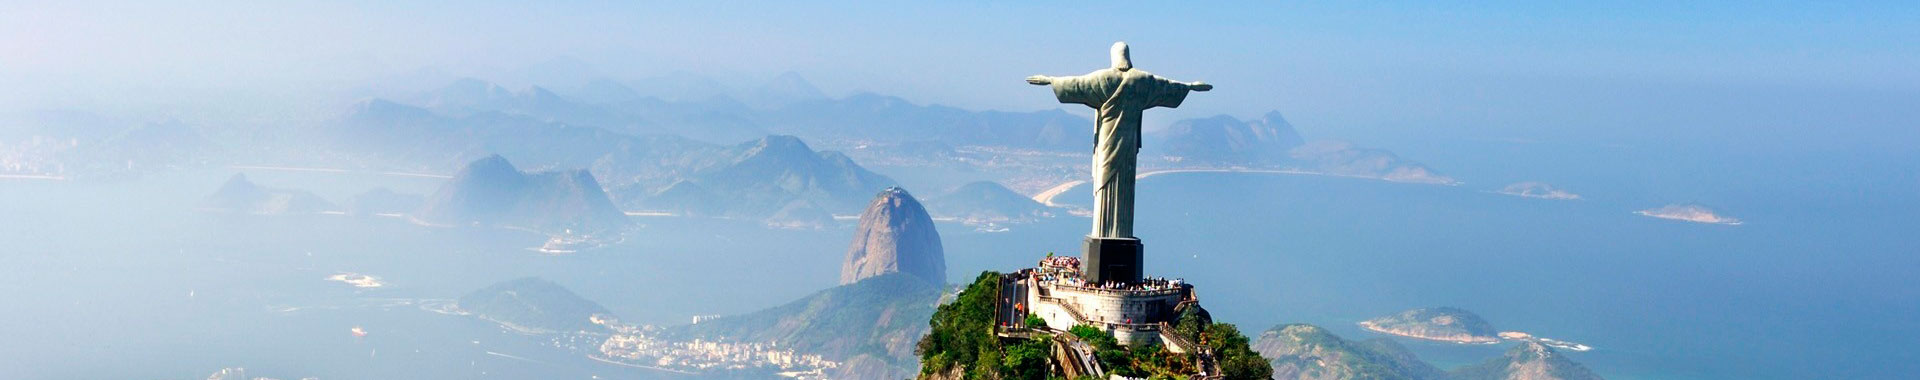 Brasil - Rio - Paseos - Corcovado